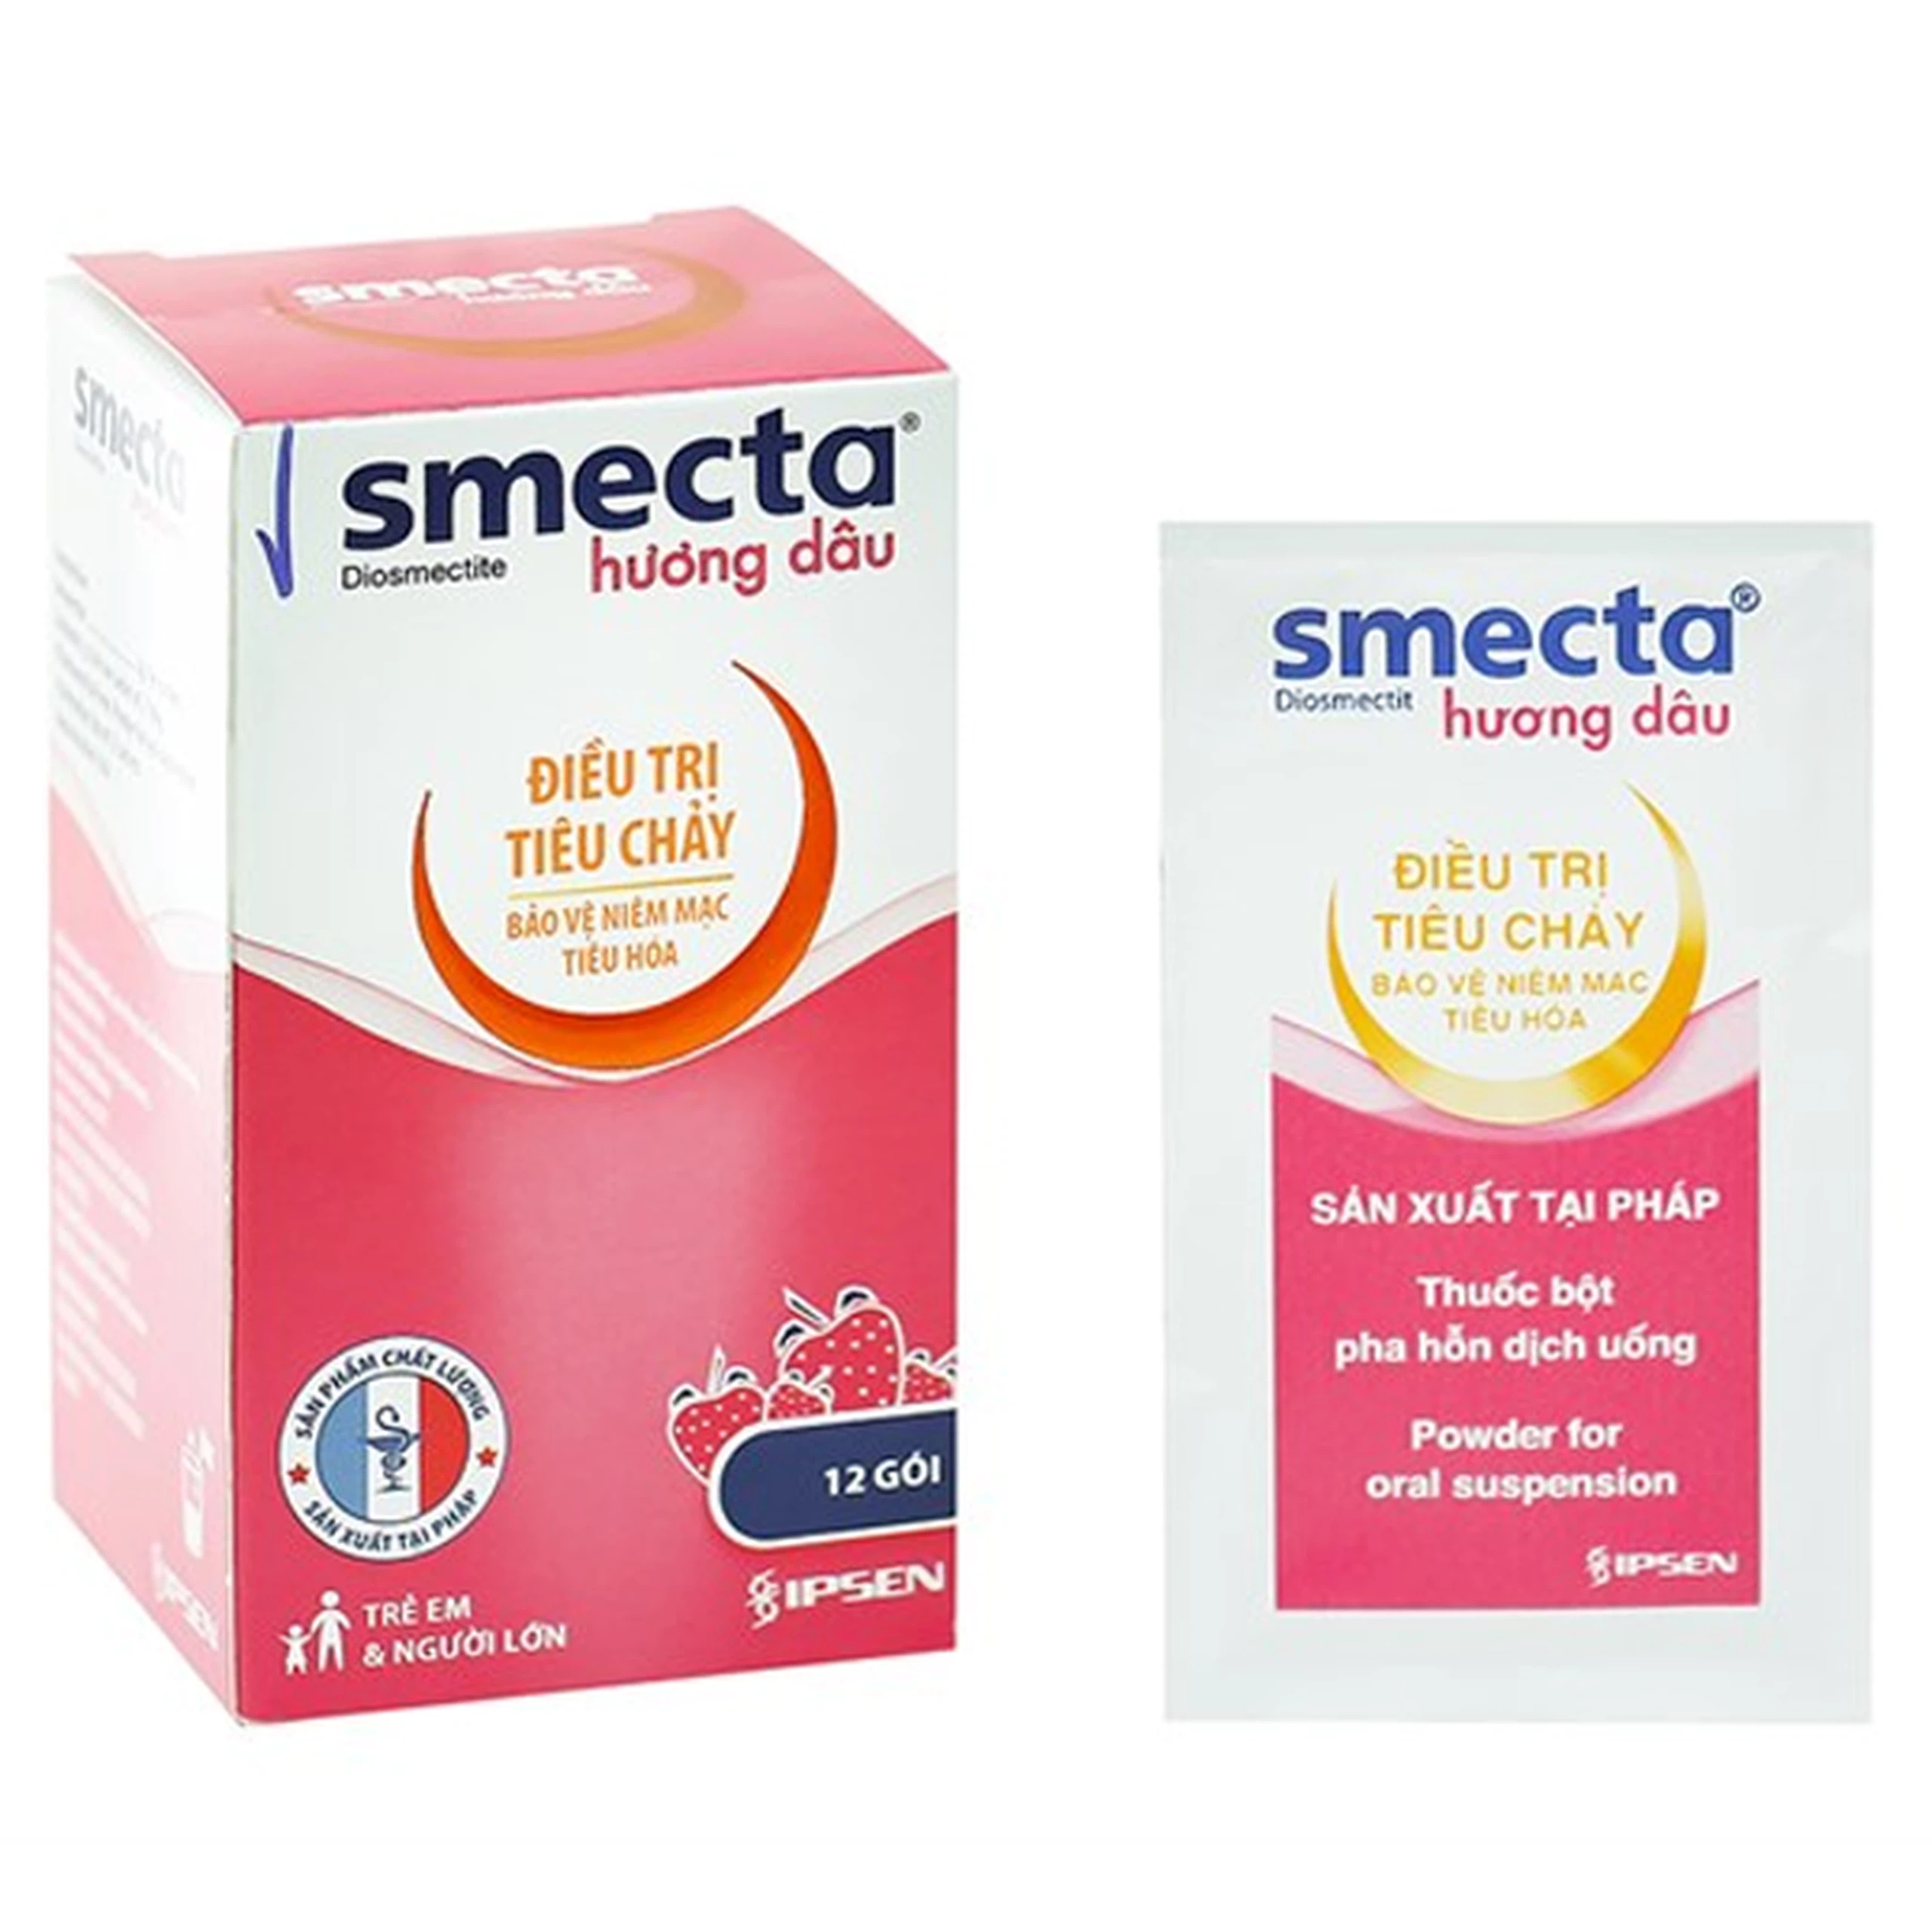 Thuốc bột pha hỗn dịch uống Smecta Ipsen hương dâu điều trị tiêu chảy (12 gói x 10g)